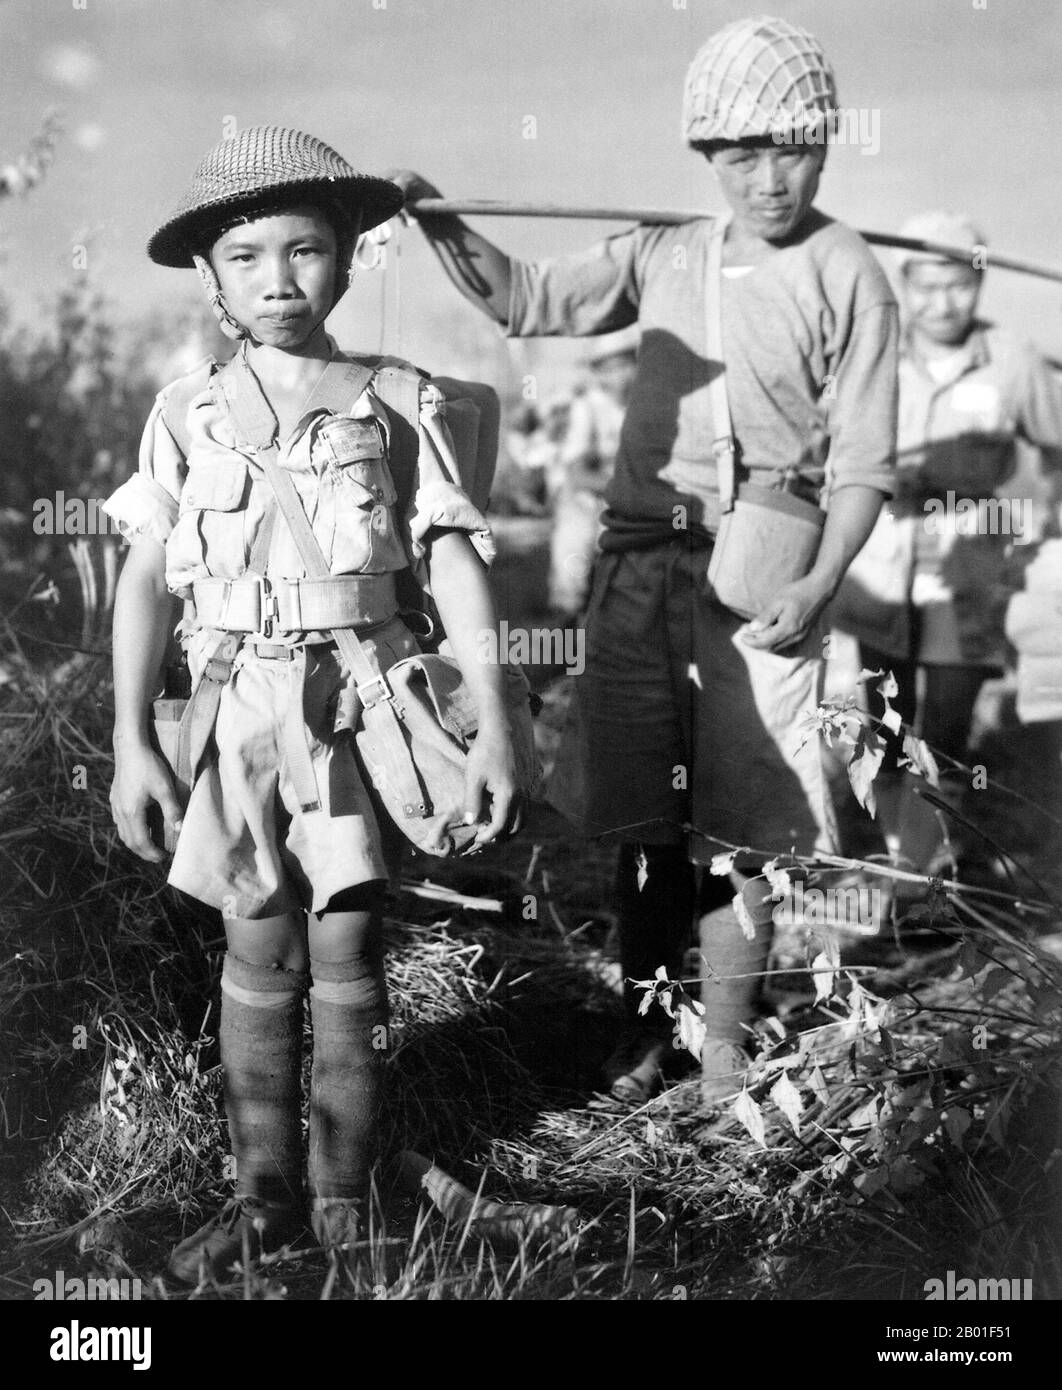 Birma/Myanmar: Chinesischer Kindersoldat am China-Birma-India Theatre in Myitkyina, Mai 1944. Dieser chinesische Kindersoldat, 10 Jahre alt, mit schwerem Rudel, war Mitglied einer Armeeabteilung, die sie nach der Gefangennahme des Flugplatzes Myitkyina, Burma, unter dem Kommando von US-Generalmajor Frank Merrill nach China zurückbrachte. Chinesische und alliierte Truppen hatten zuvor den heimtückischen Dschungel des Kumon-Bum-Gebirges durchquert, bevor sie japanische Truppen im Süden angegriffen hatten. Erschöpfung und Krankheit führten zur frühzeitigen Evakuierung vieler chinesischer und alliierter Truppen vor dem bevorstehenden Angriff. Stockfoto